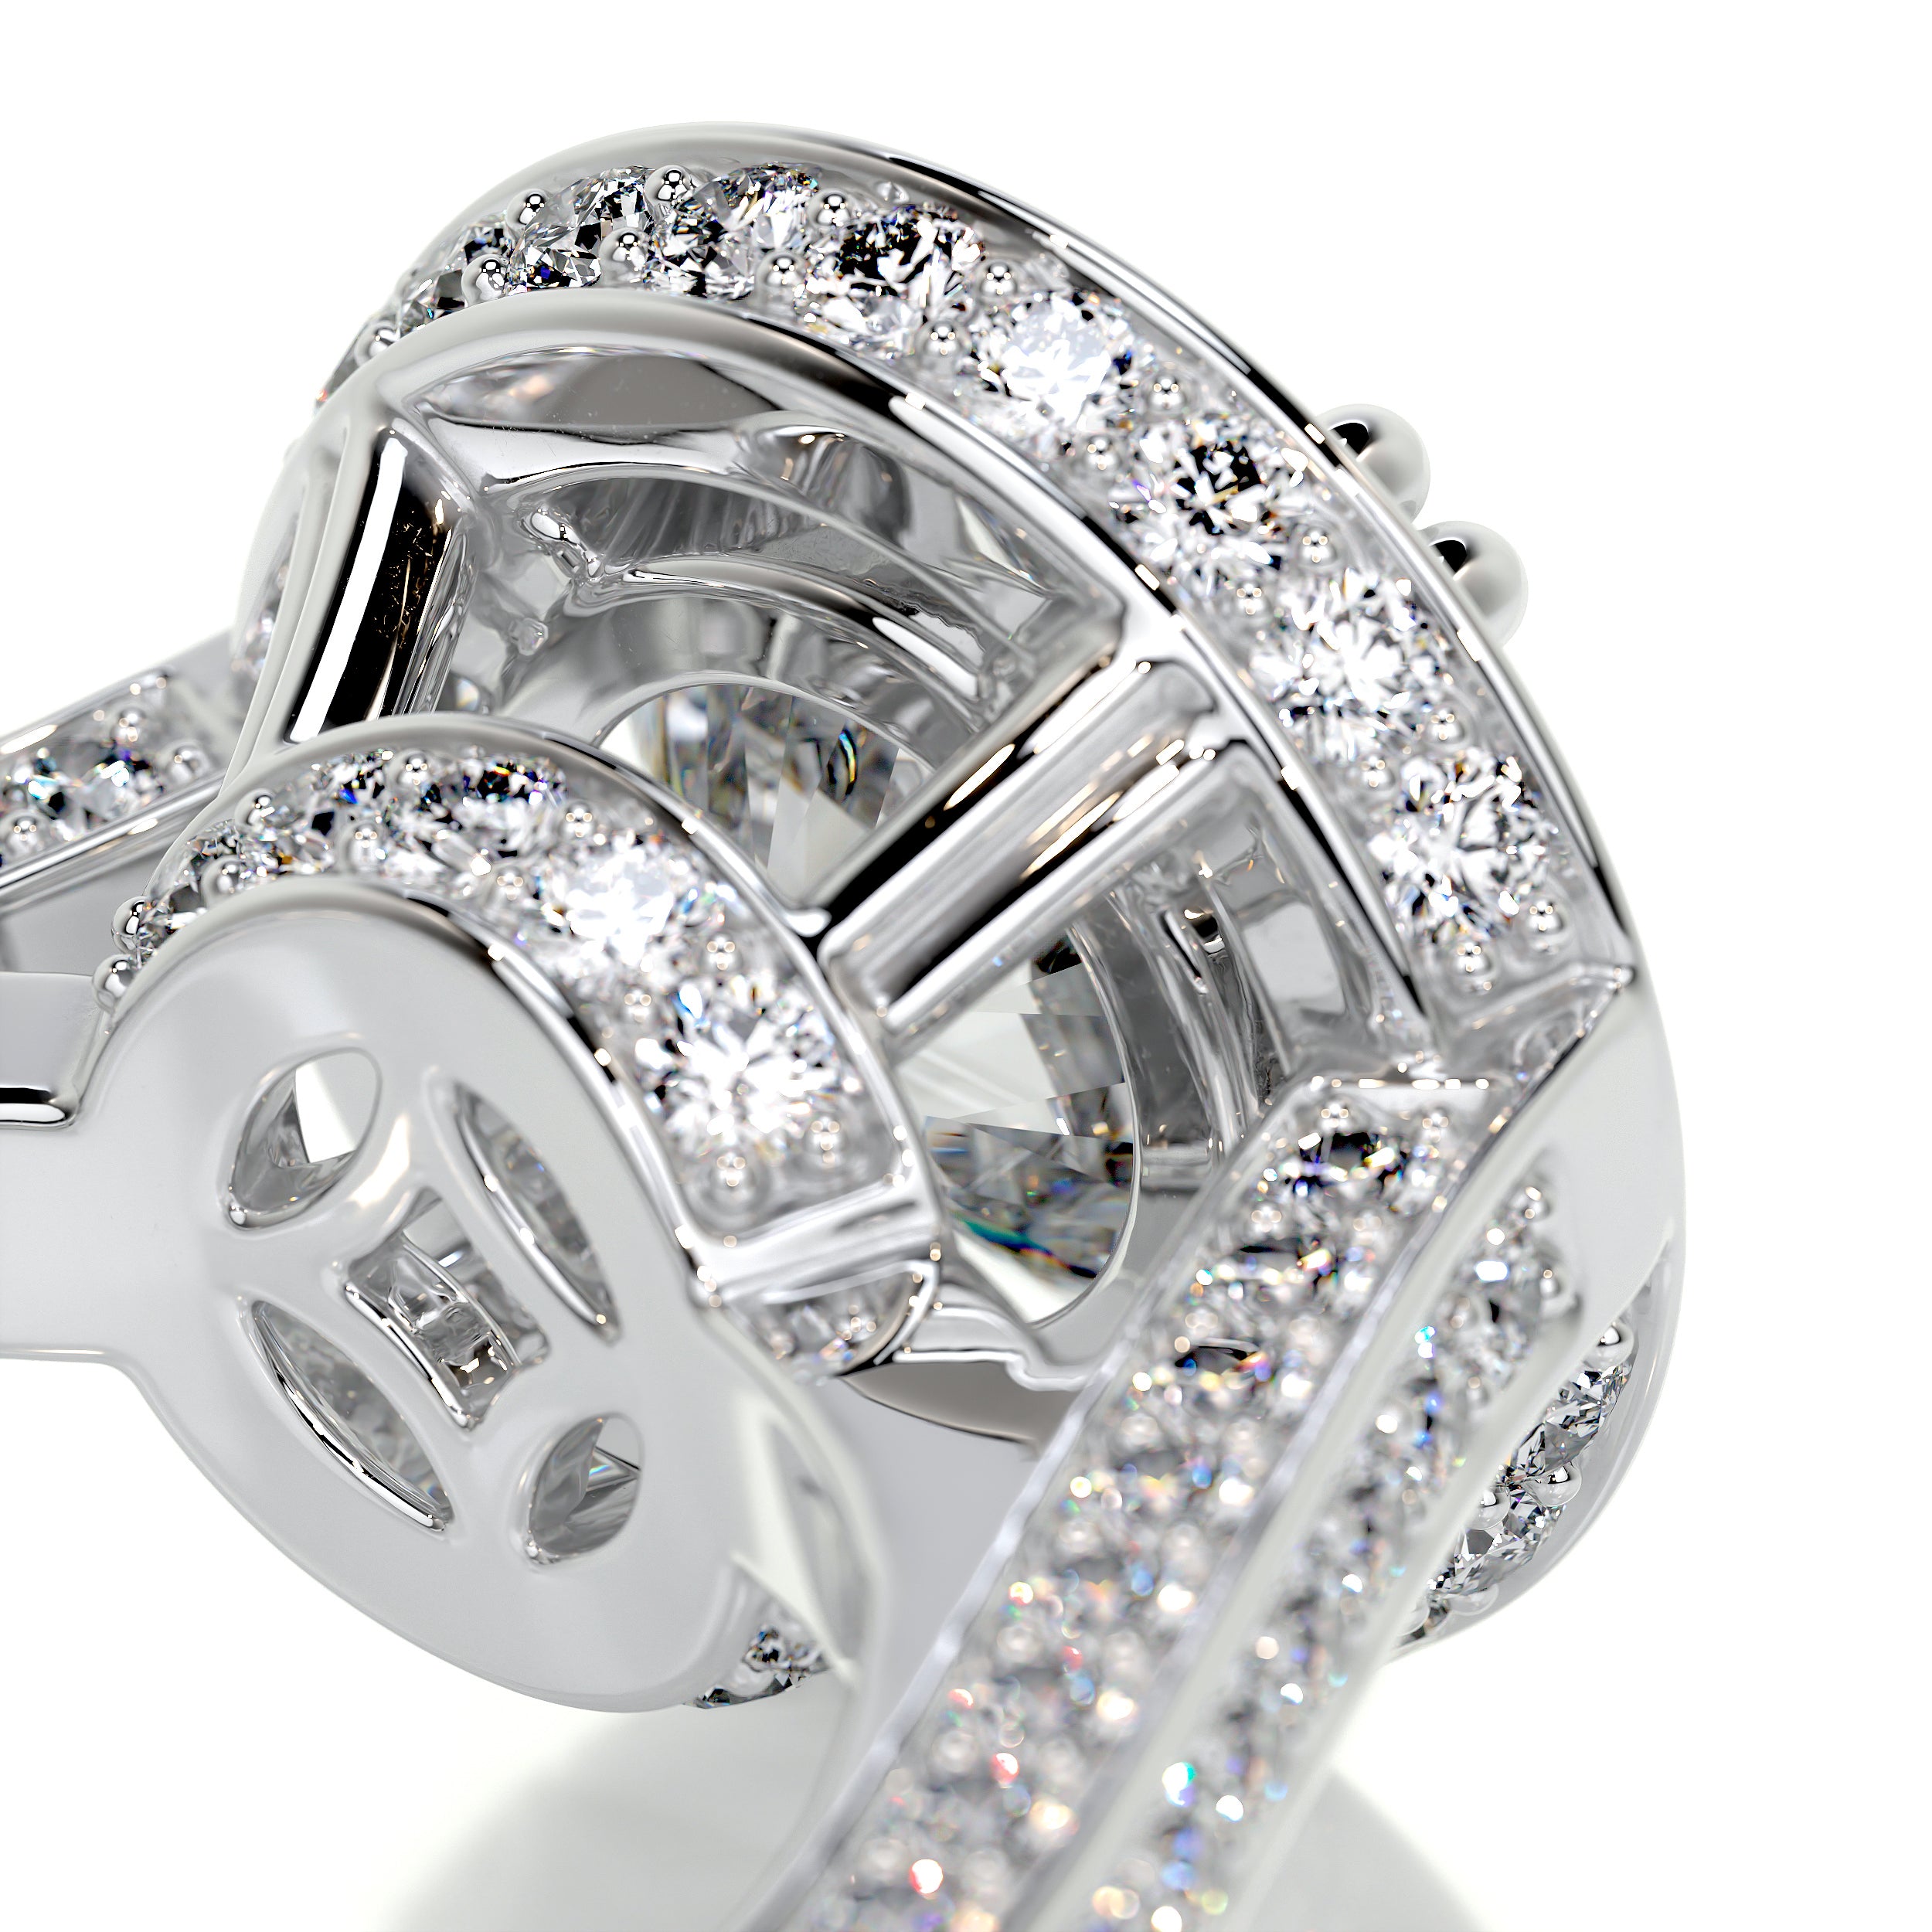 Lynn Diamond Engagement Ring -14K White Gold